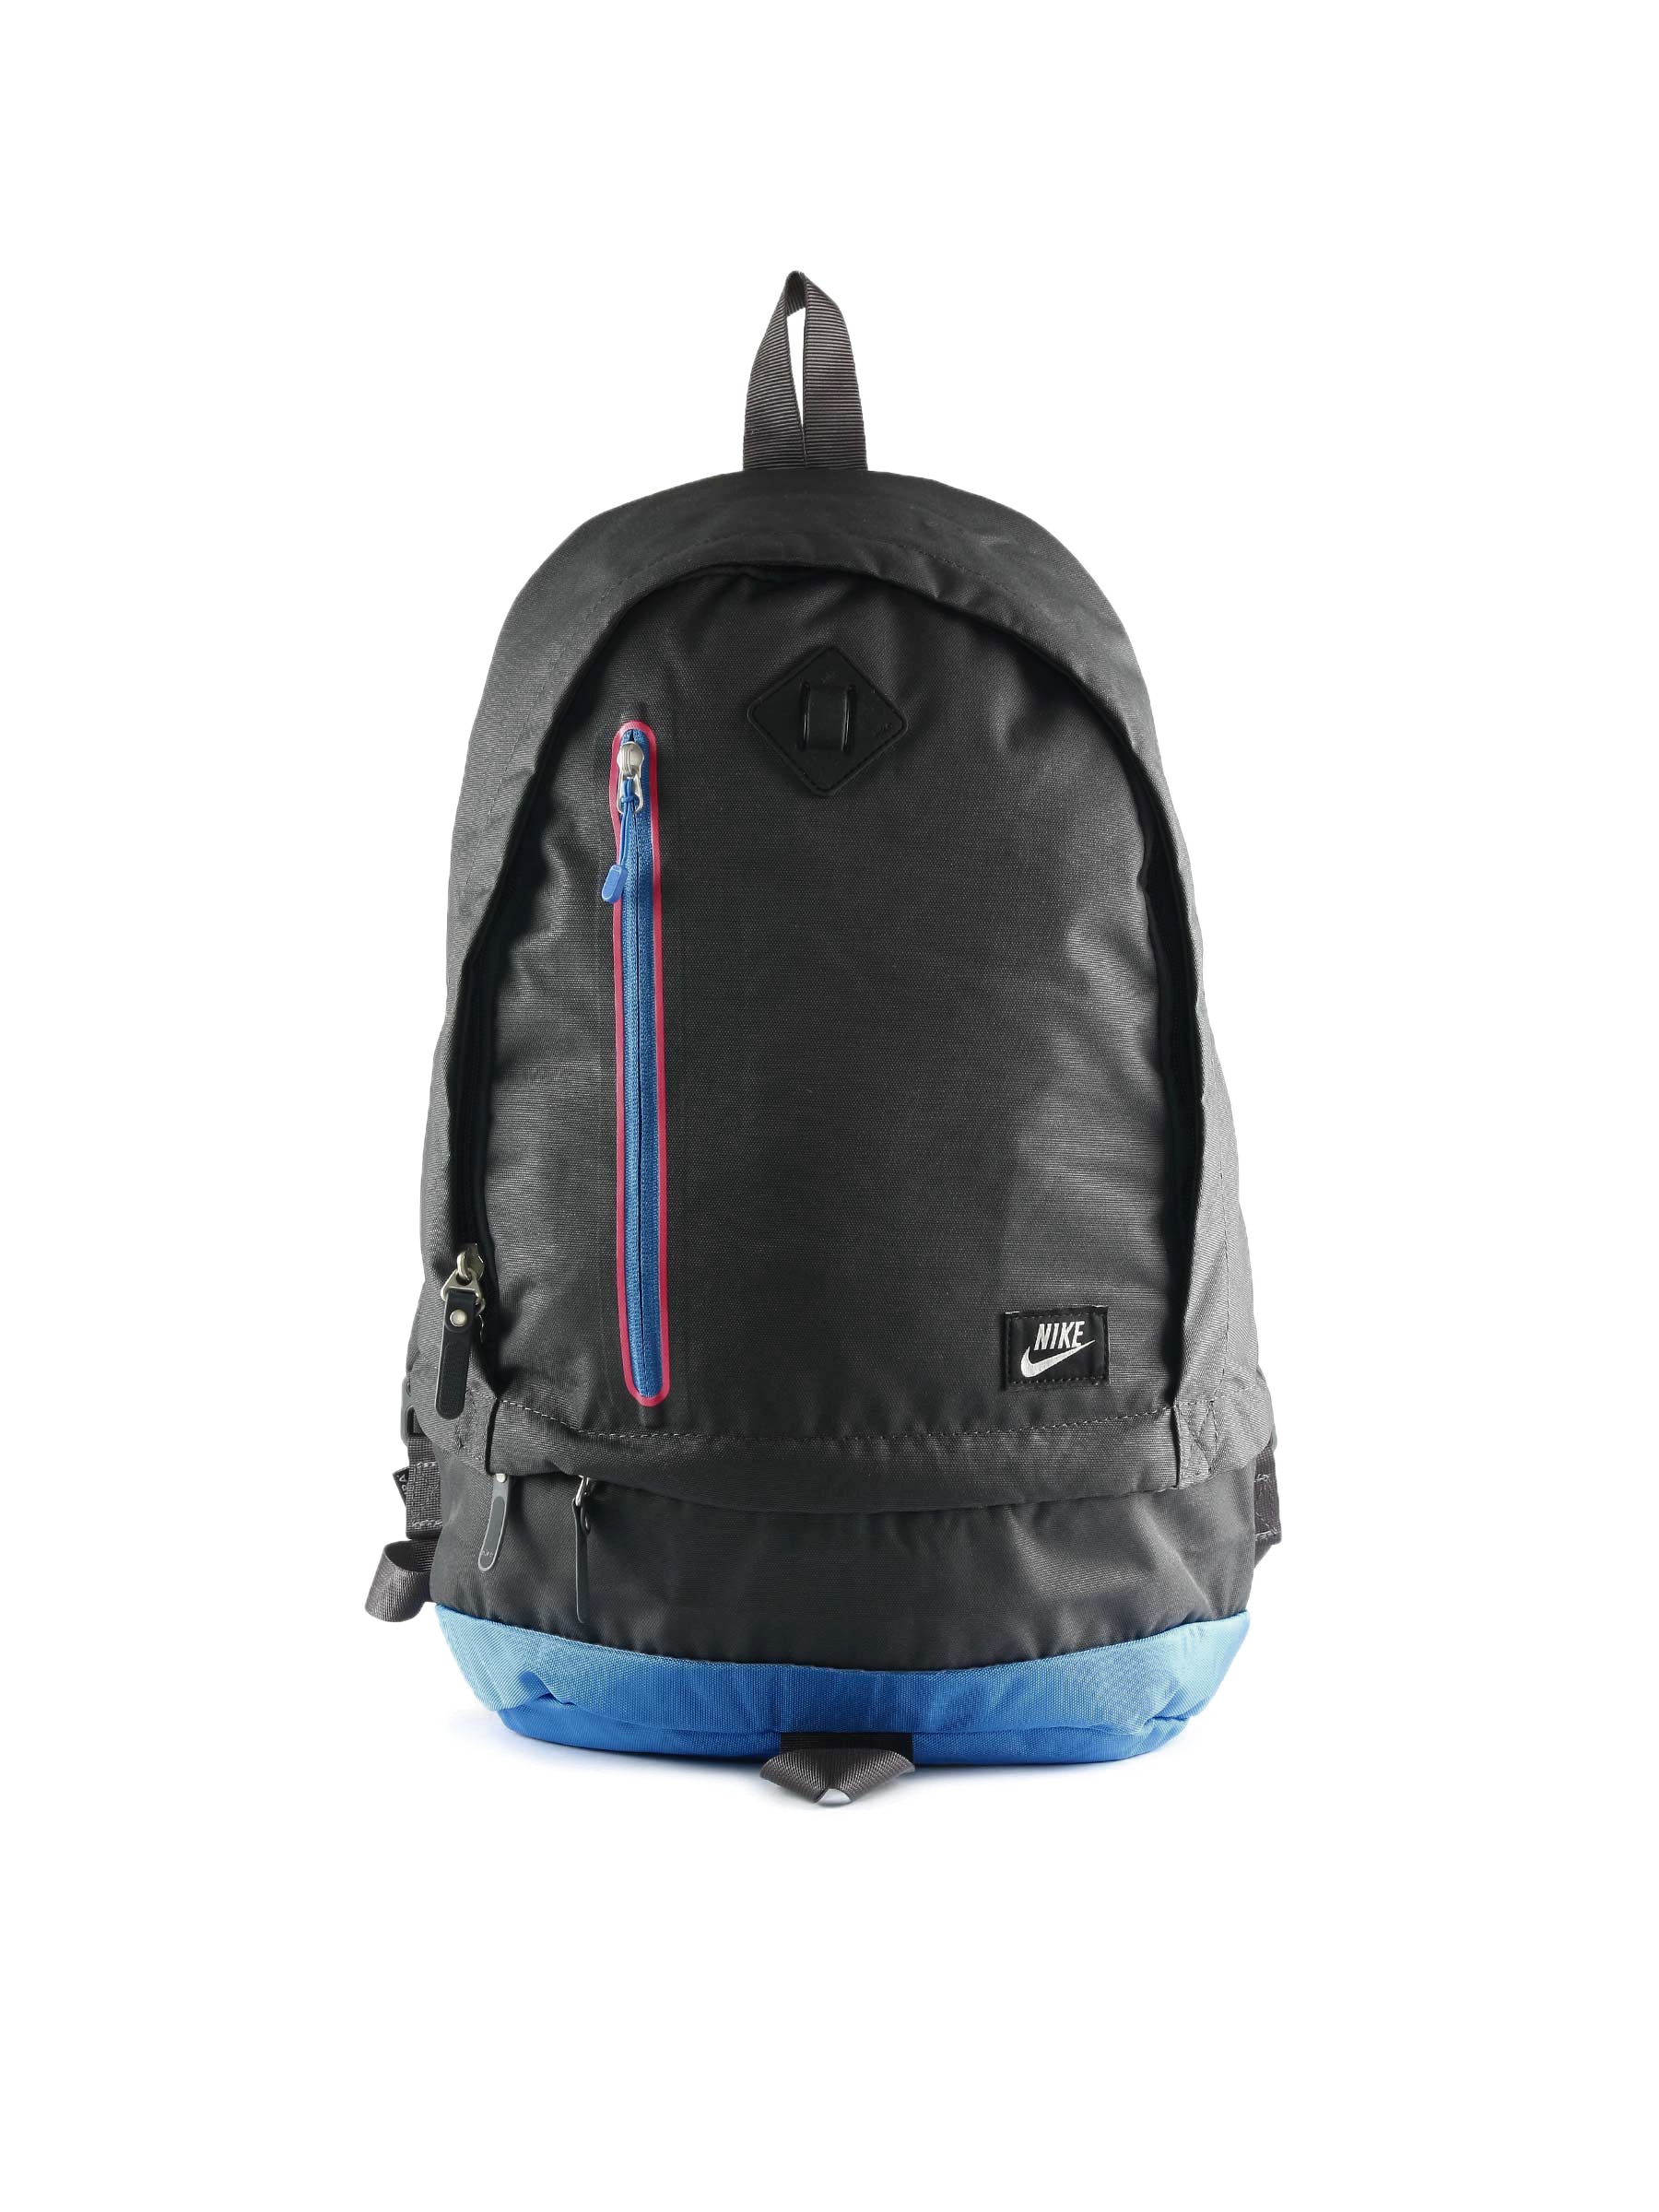 Nike Unisex Cheyenne Blue Backpack